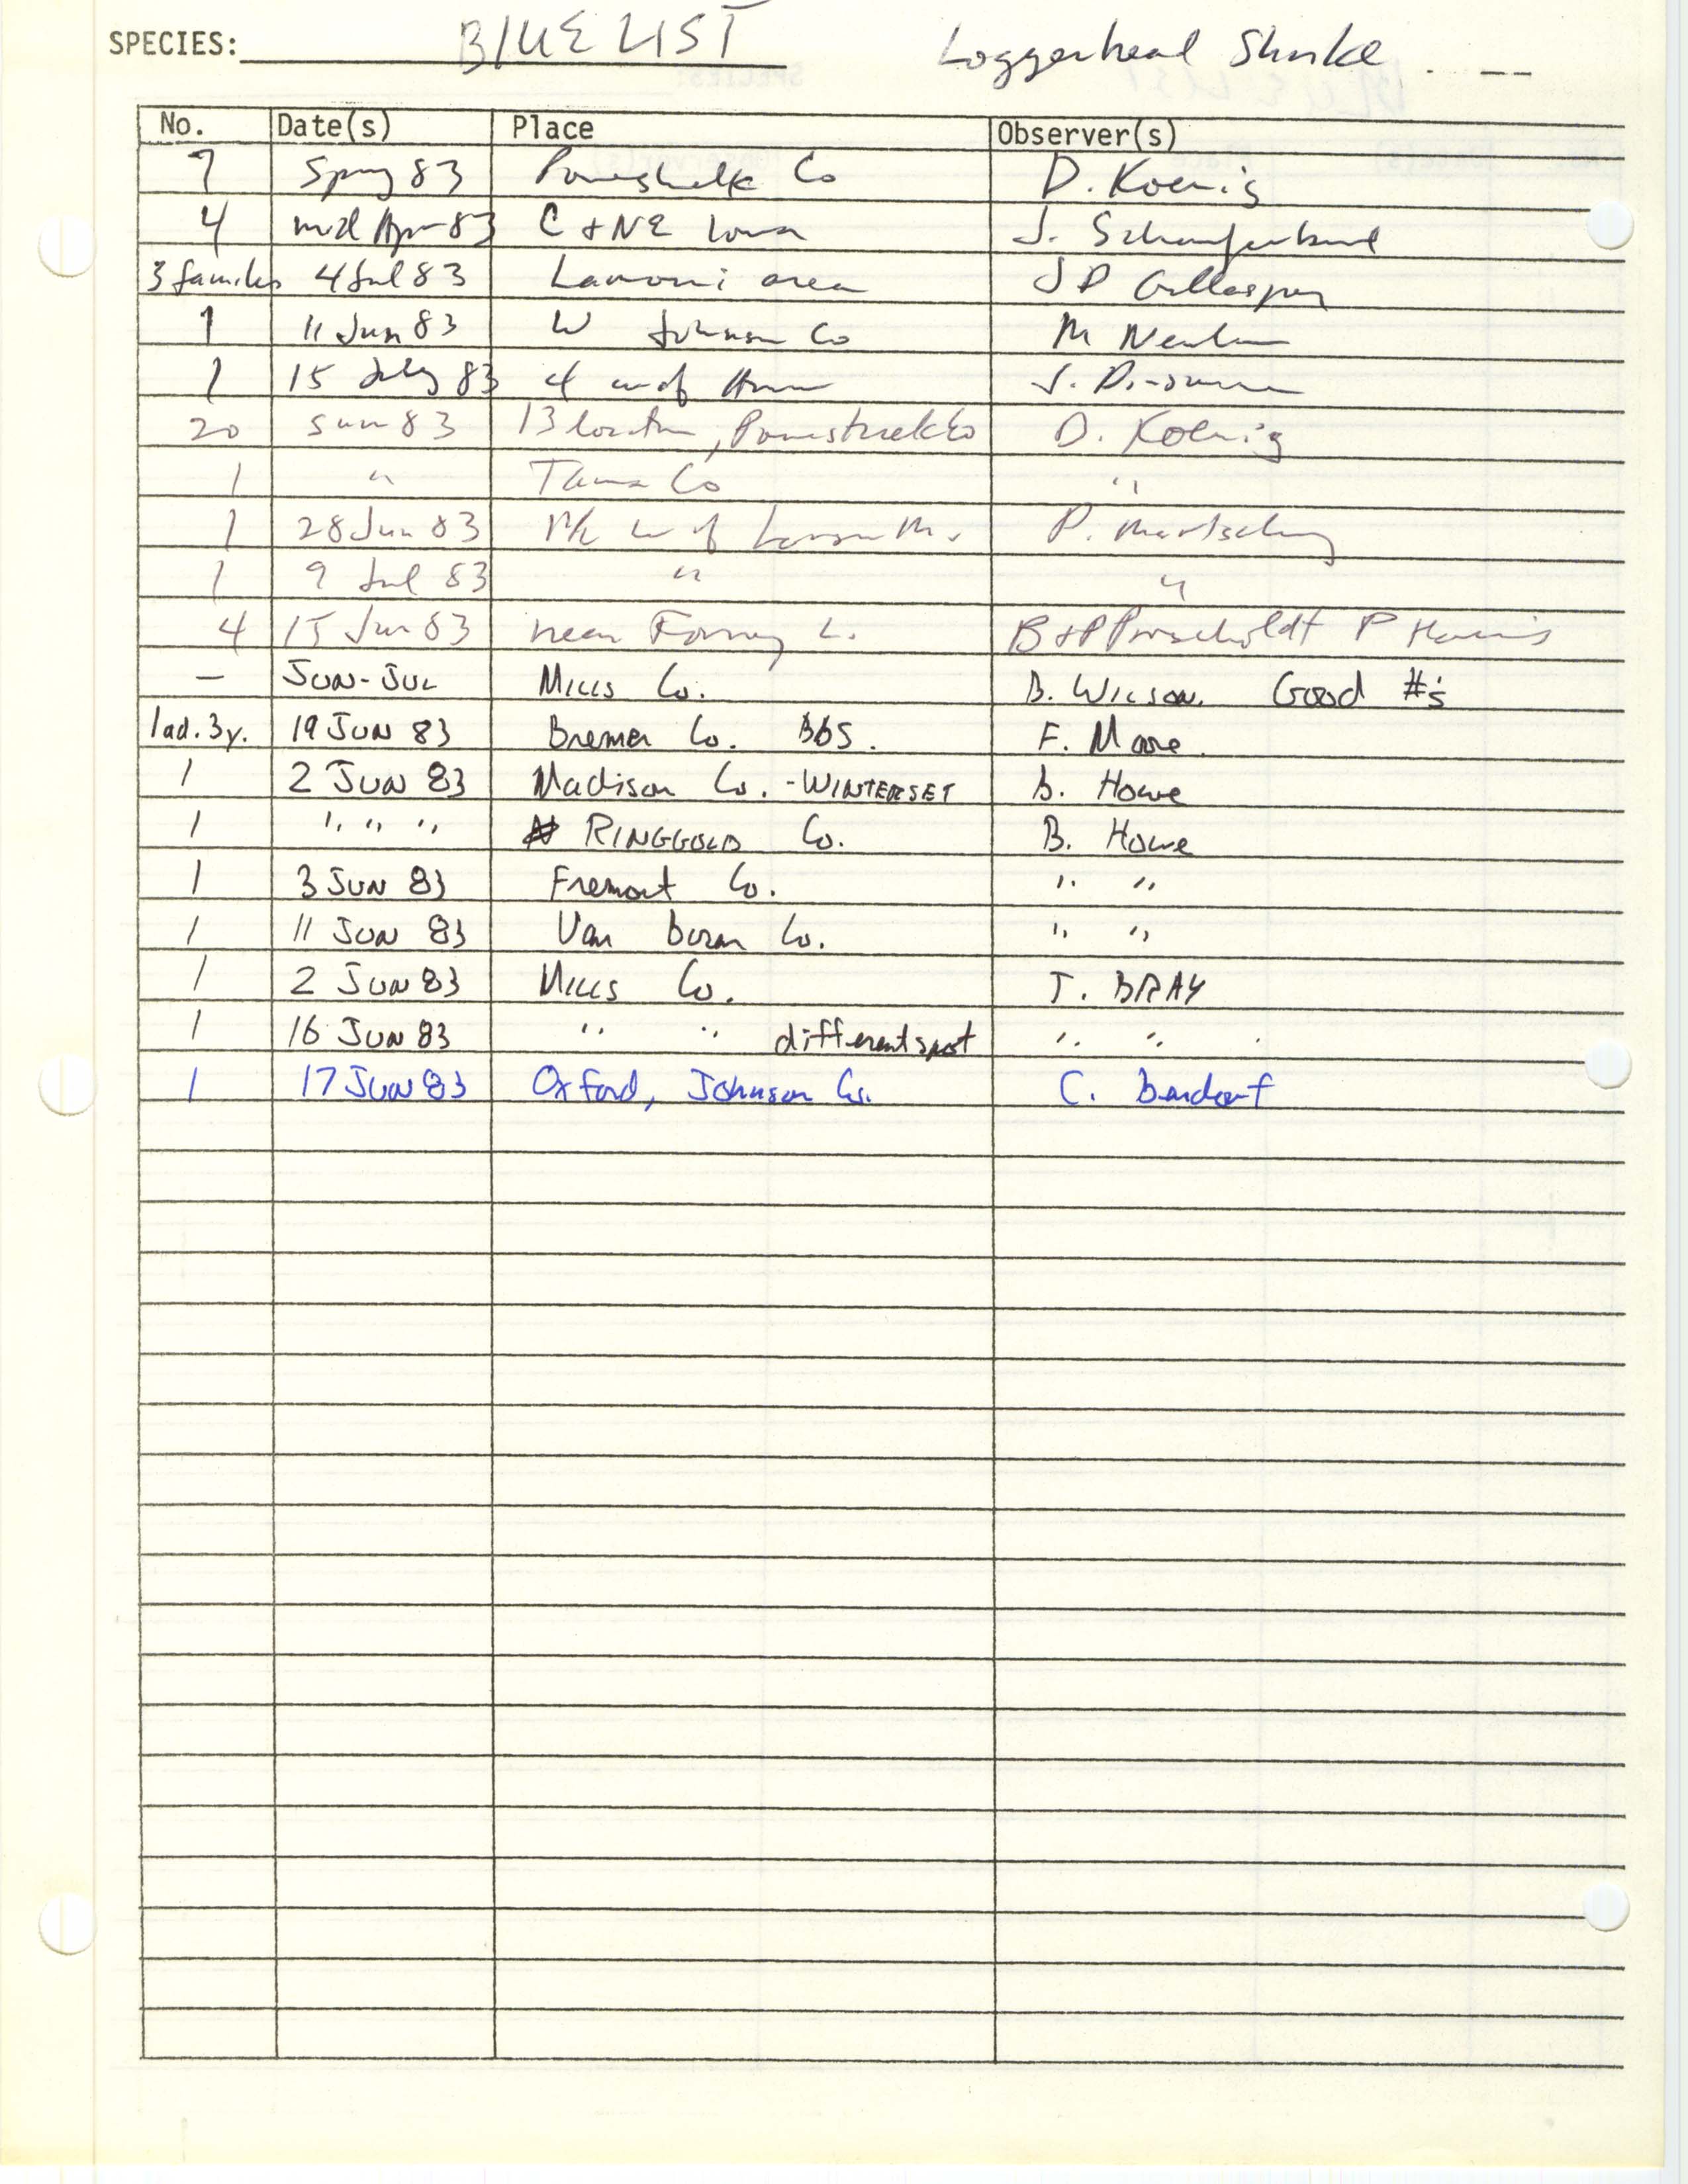 Iowa Ornithologists' Union, field report compiled data, Loggerhead Shrike, 1983